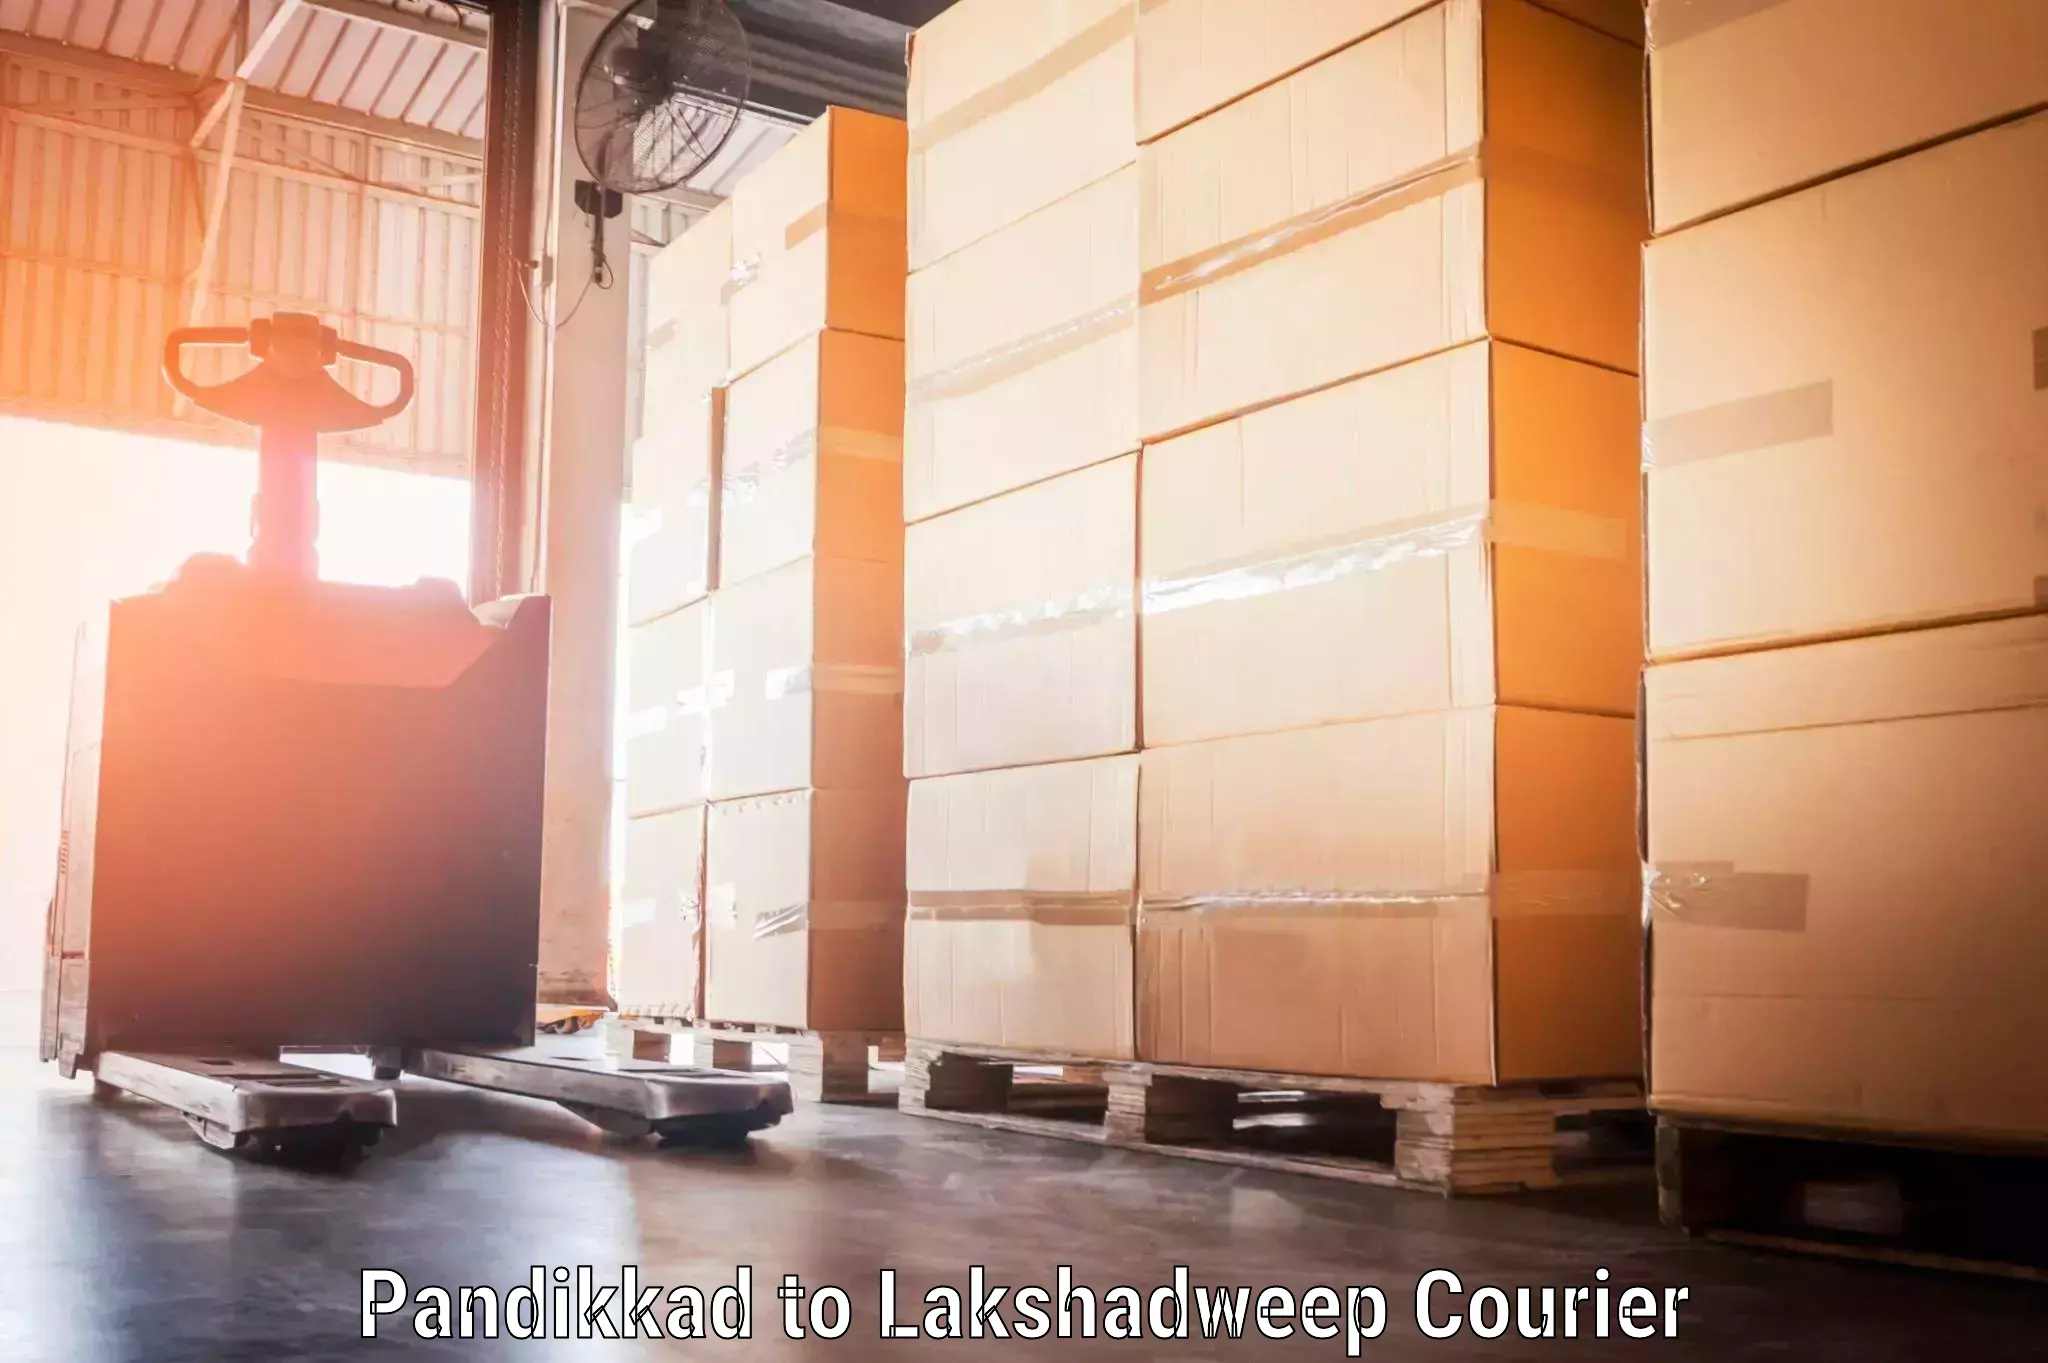 Hassle-free luggage shipping Pandikkad to Lakshadweep